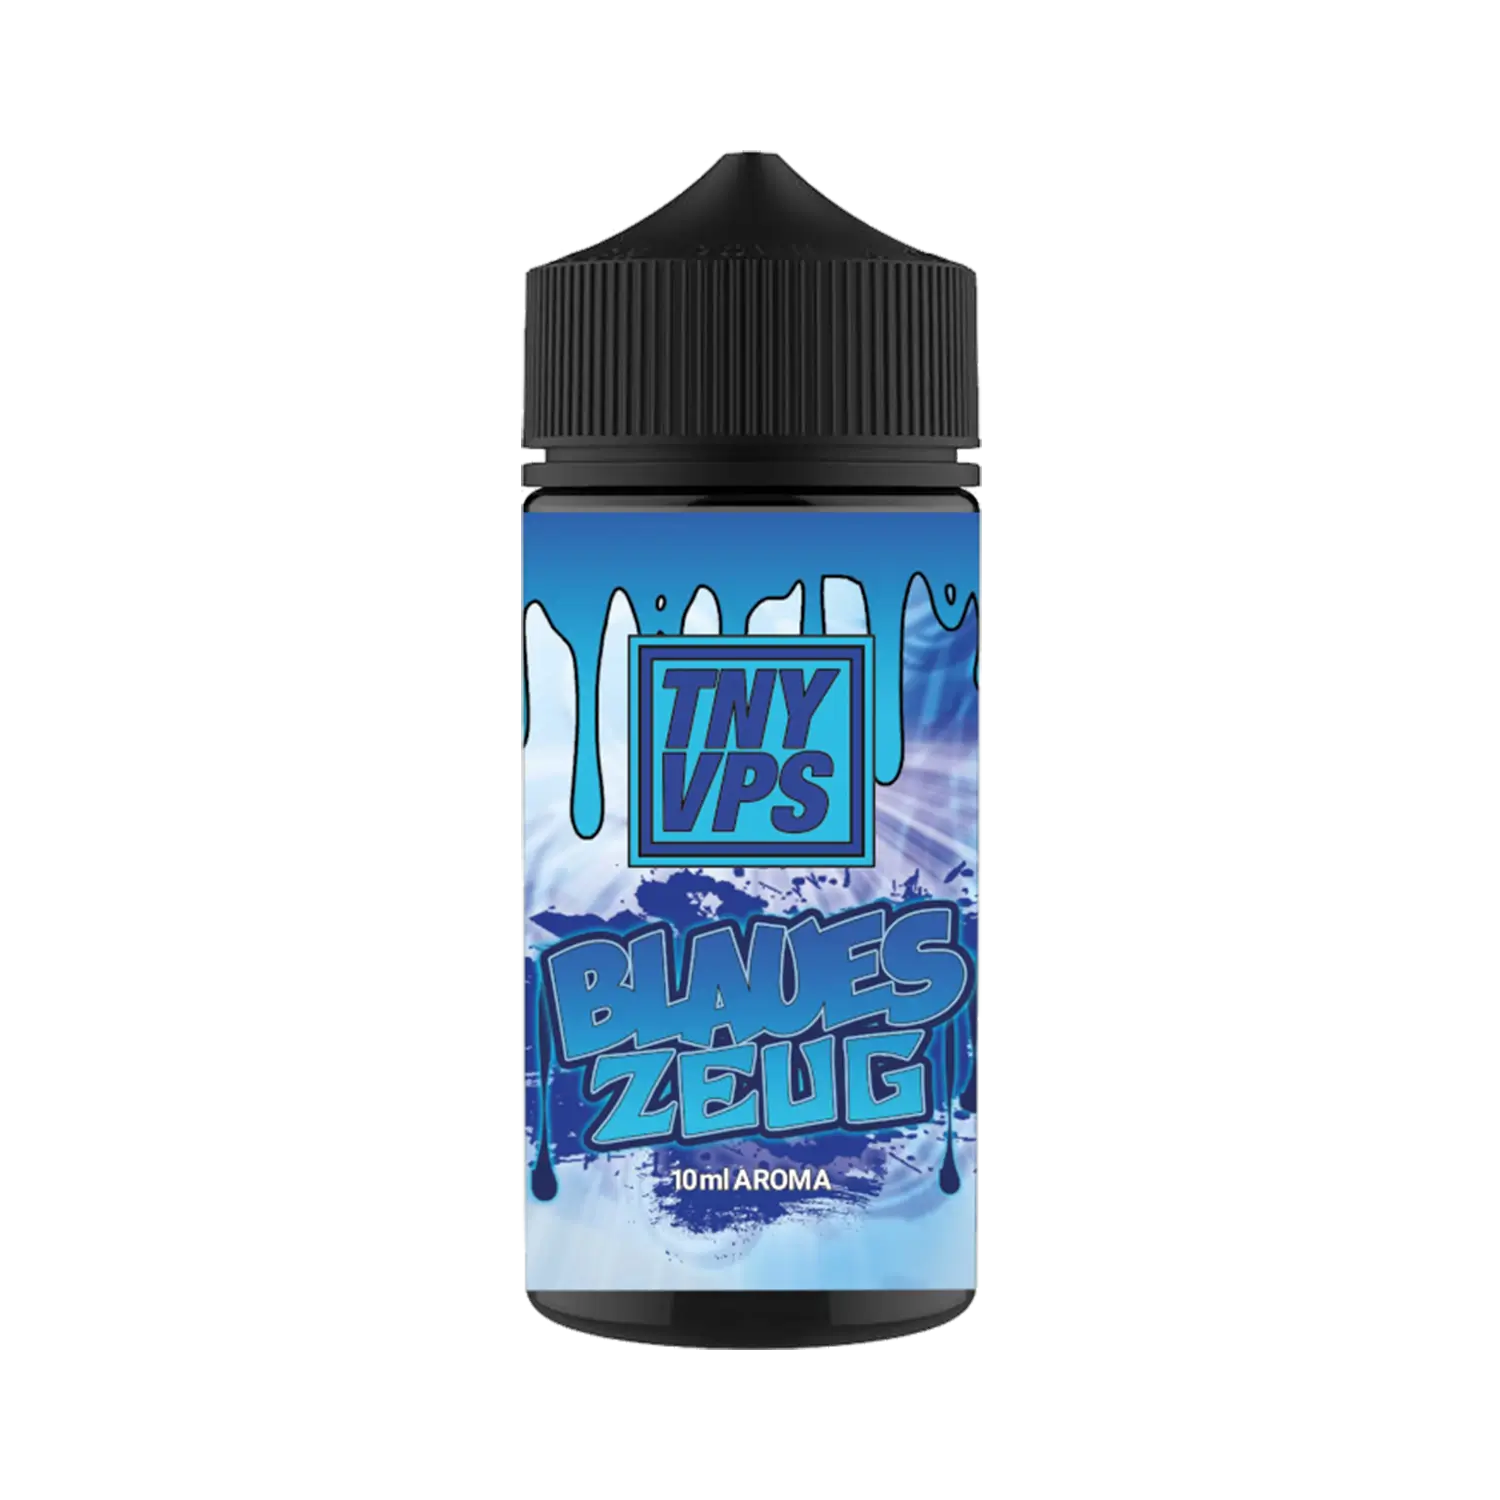 Tony Vapes - Blaues Zeug 10 ml Aroma